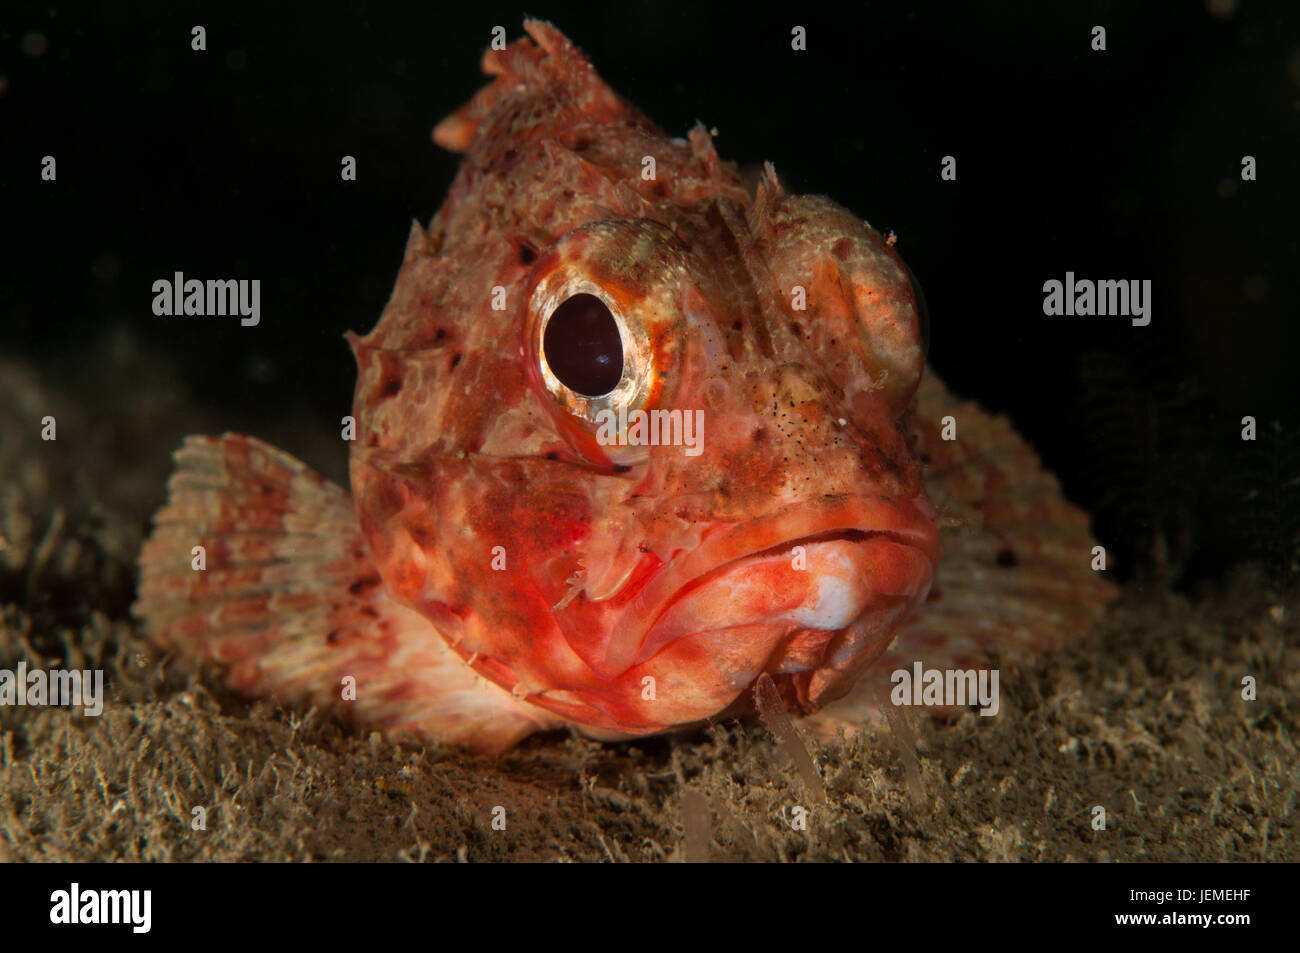 Small red scorpionfish (Scorpaena notata) in Illa Mateua, L'escala, Costa Brava, Catalonia Stock Photo